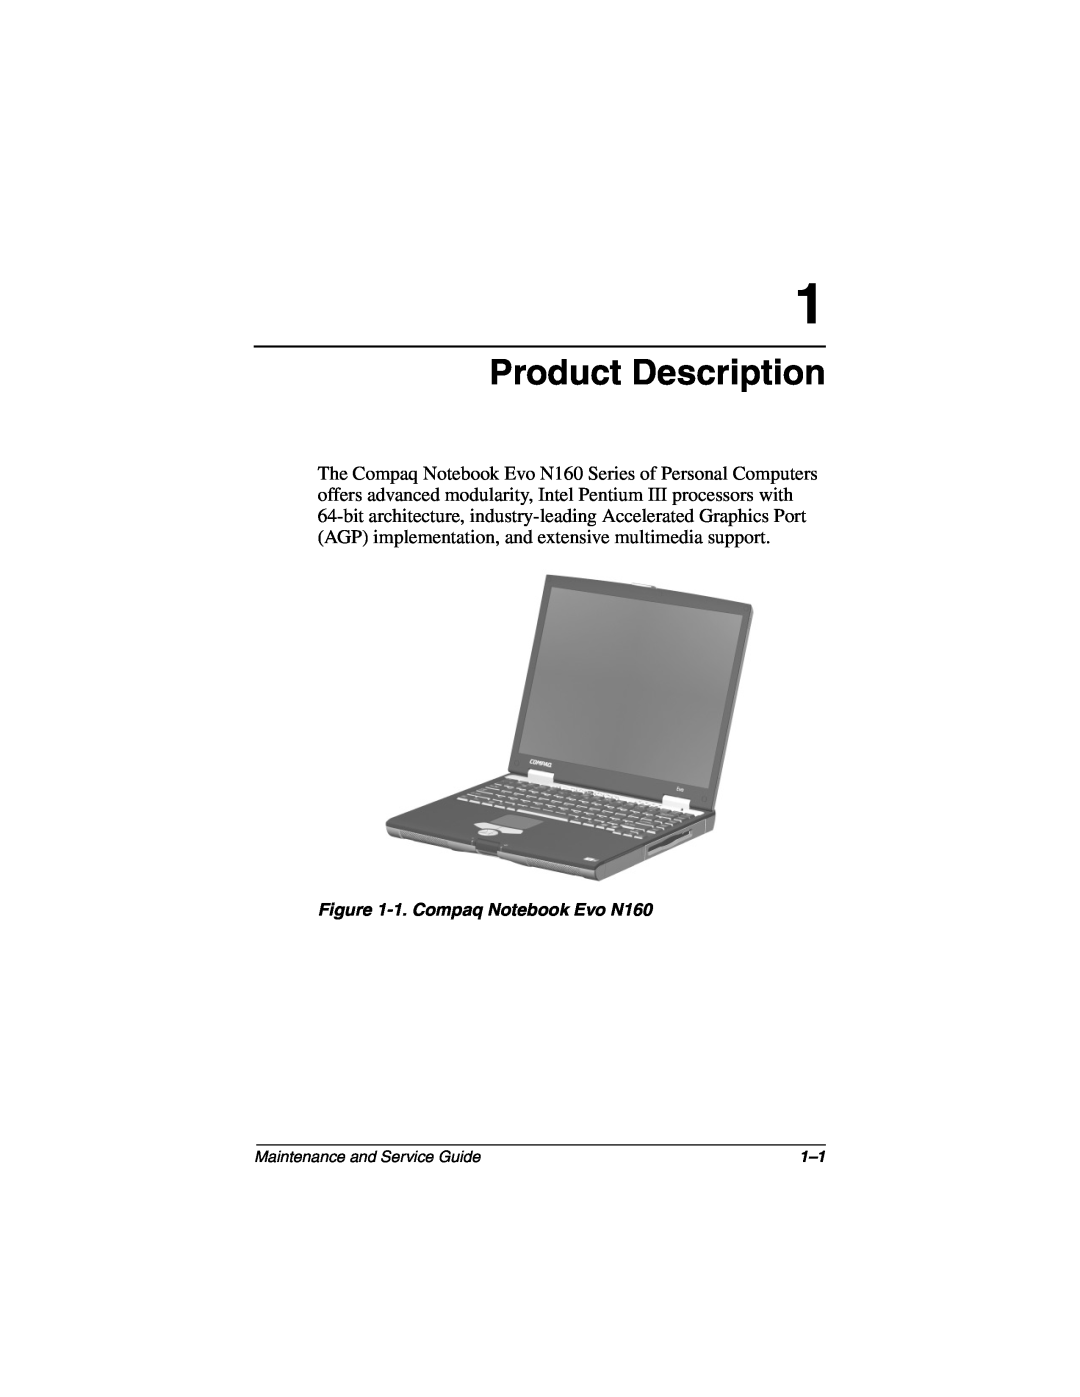 Compaq manual Product Description, 1. Compaq Notebook Evo N160 